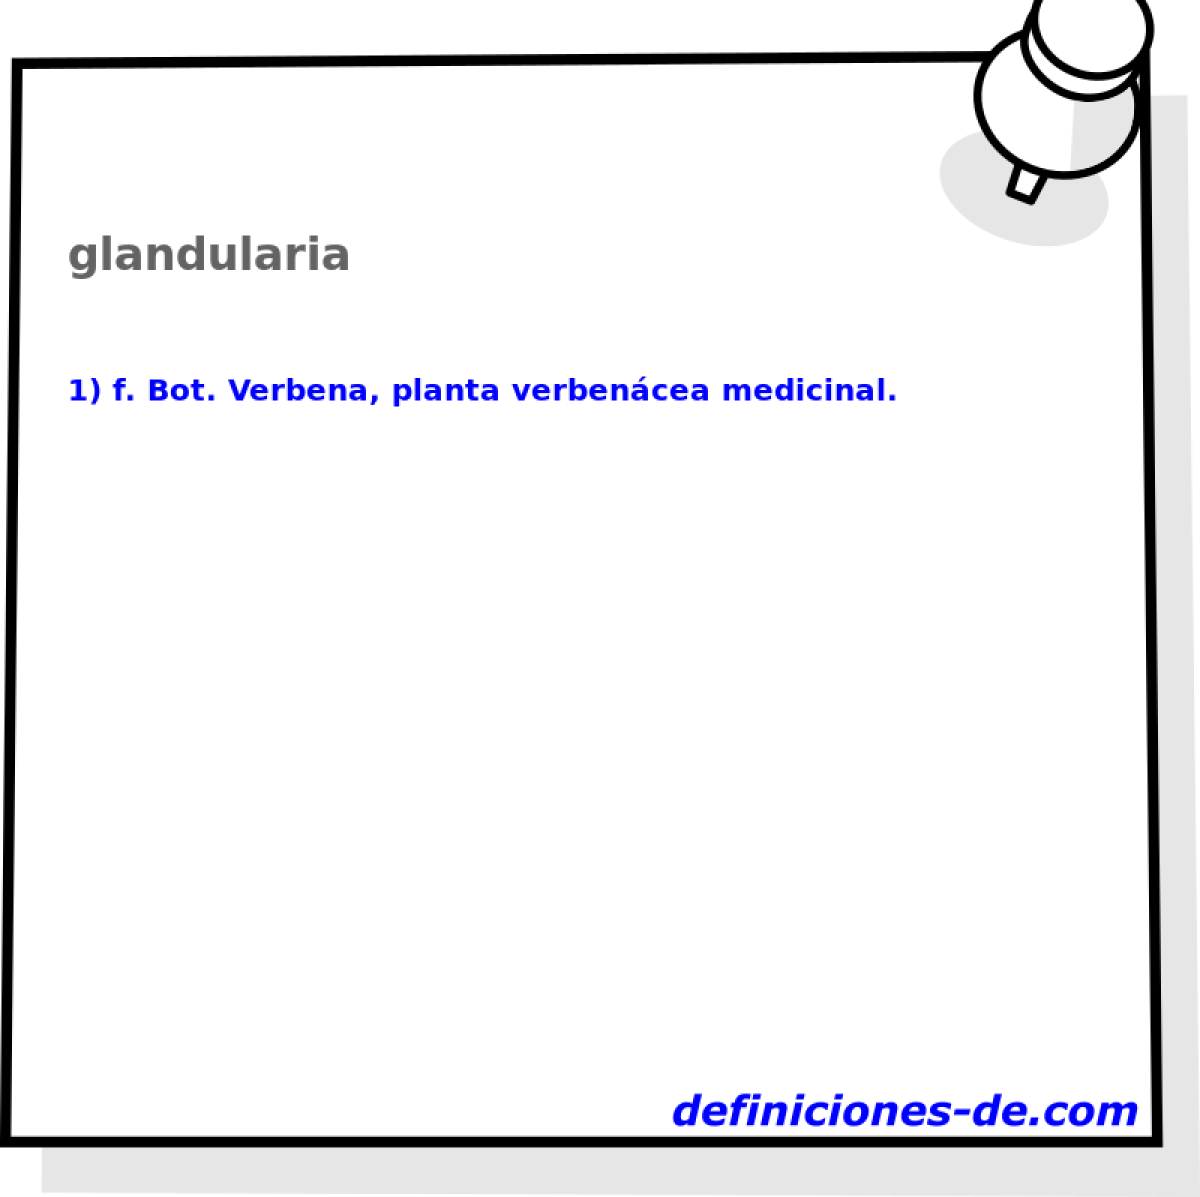 glandularia 